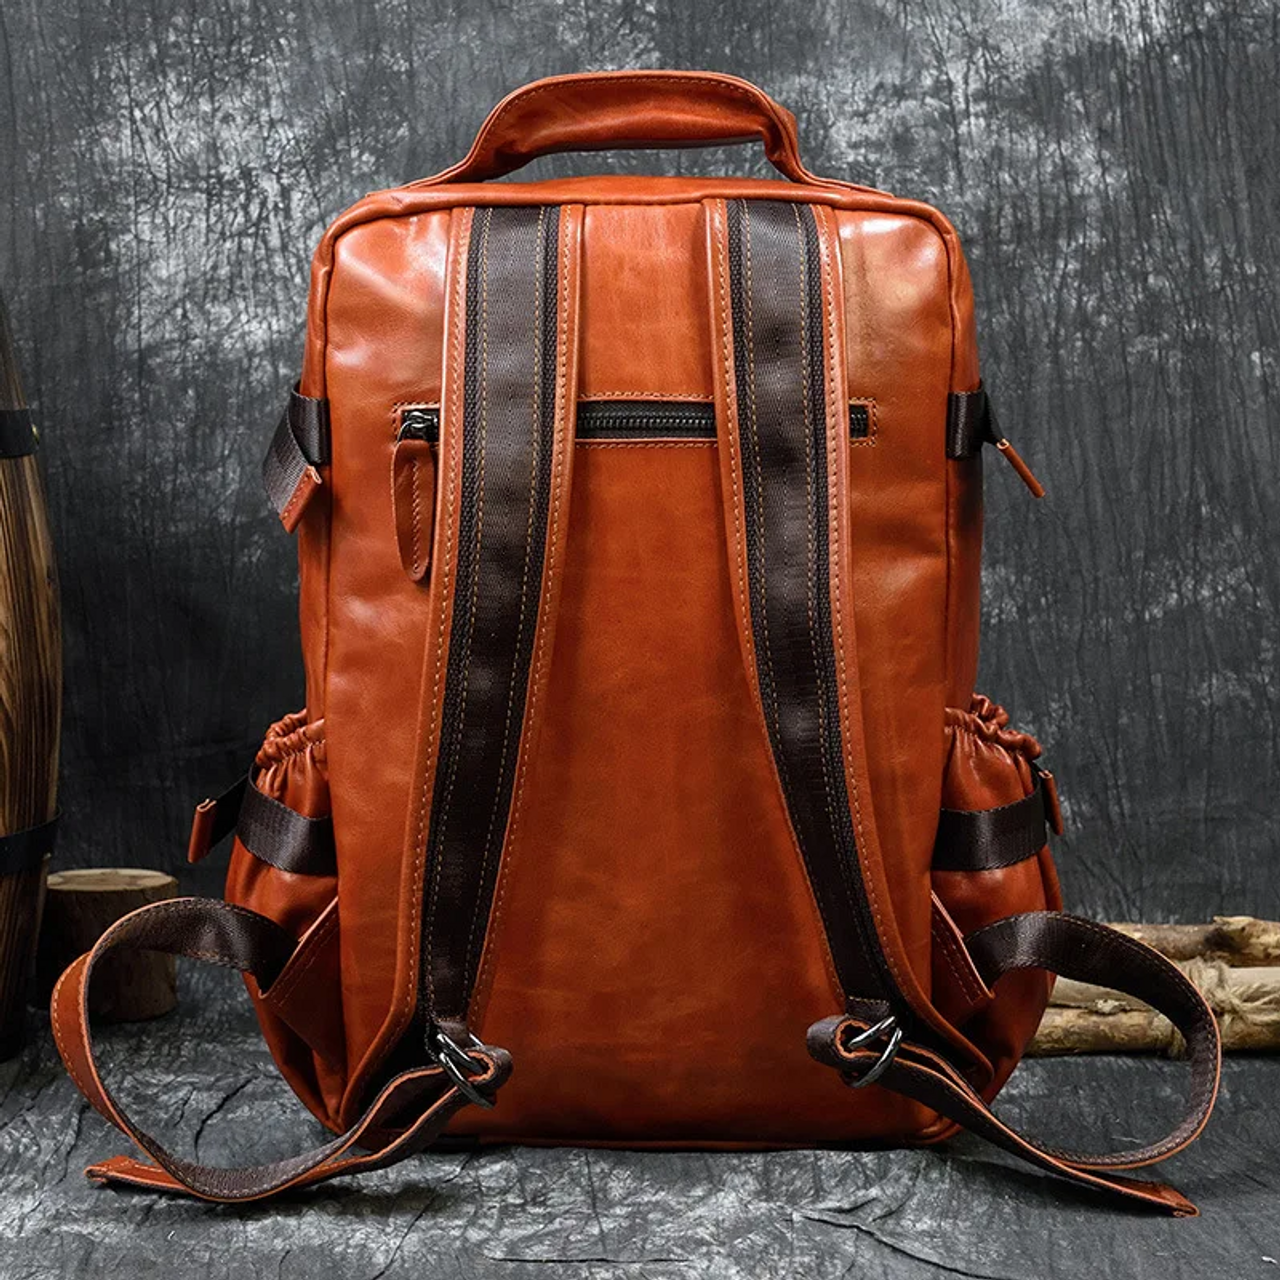 Large Capacity Orange Leather Laptop Backpack